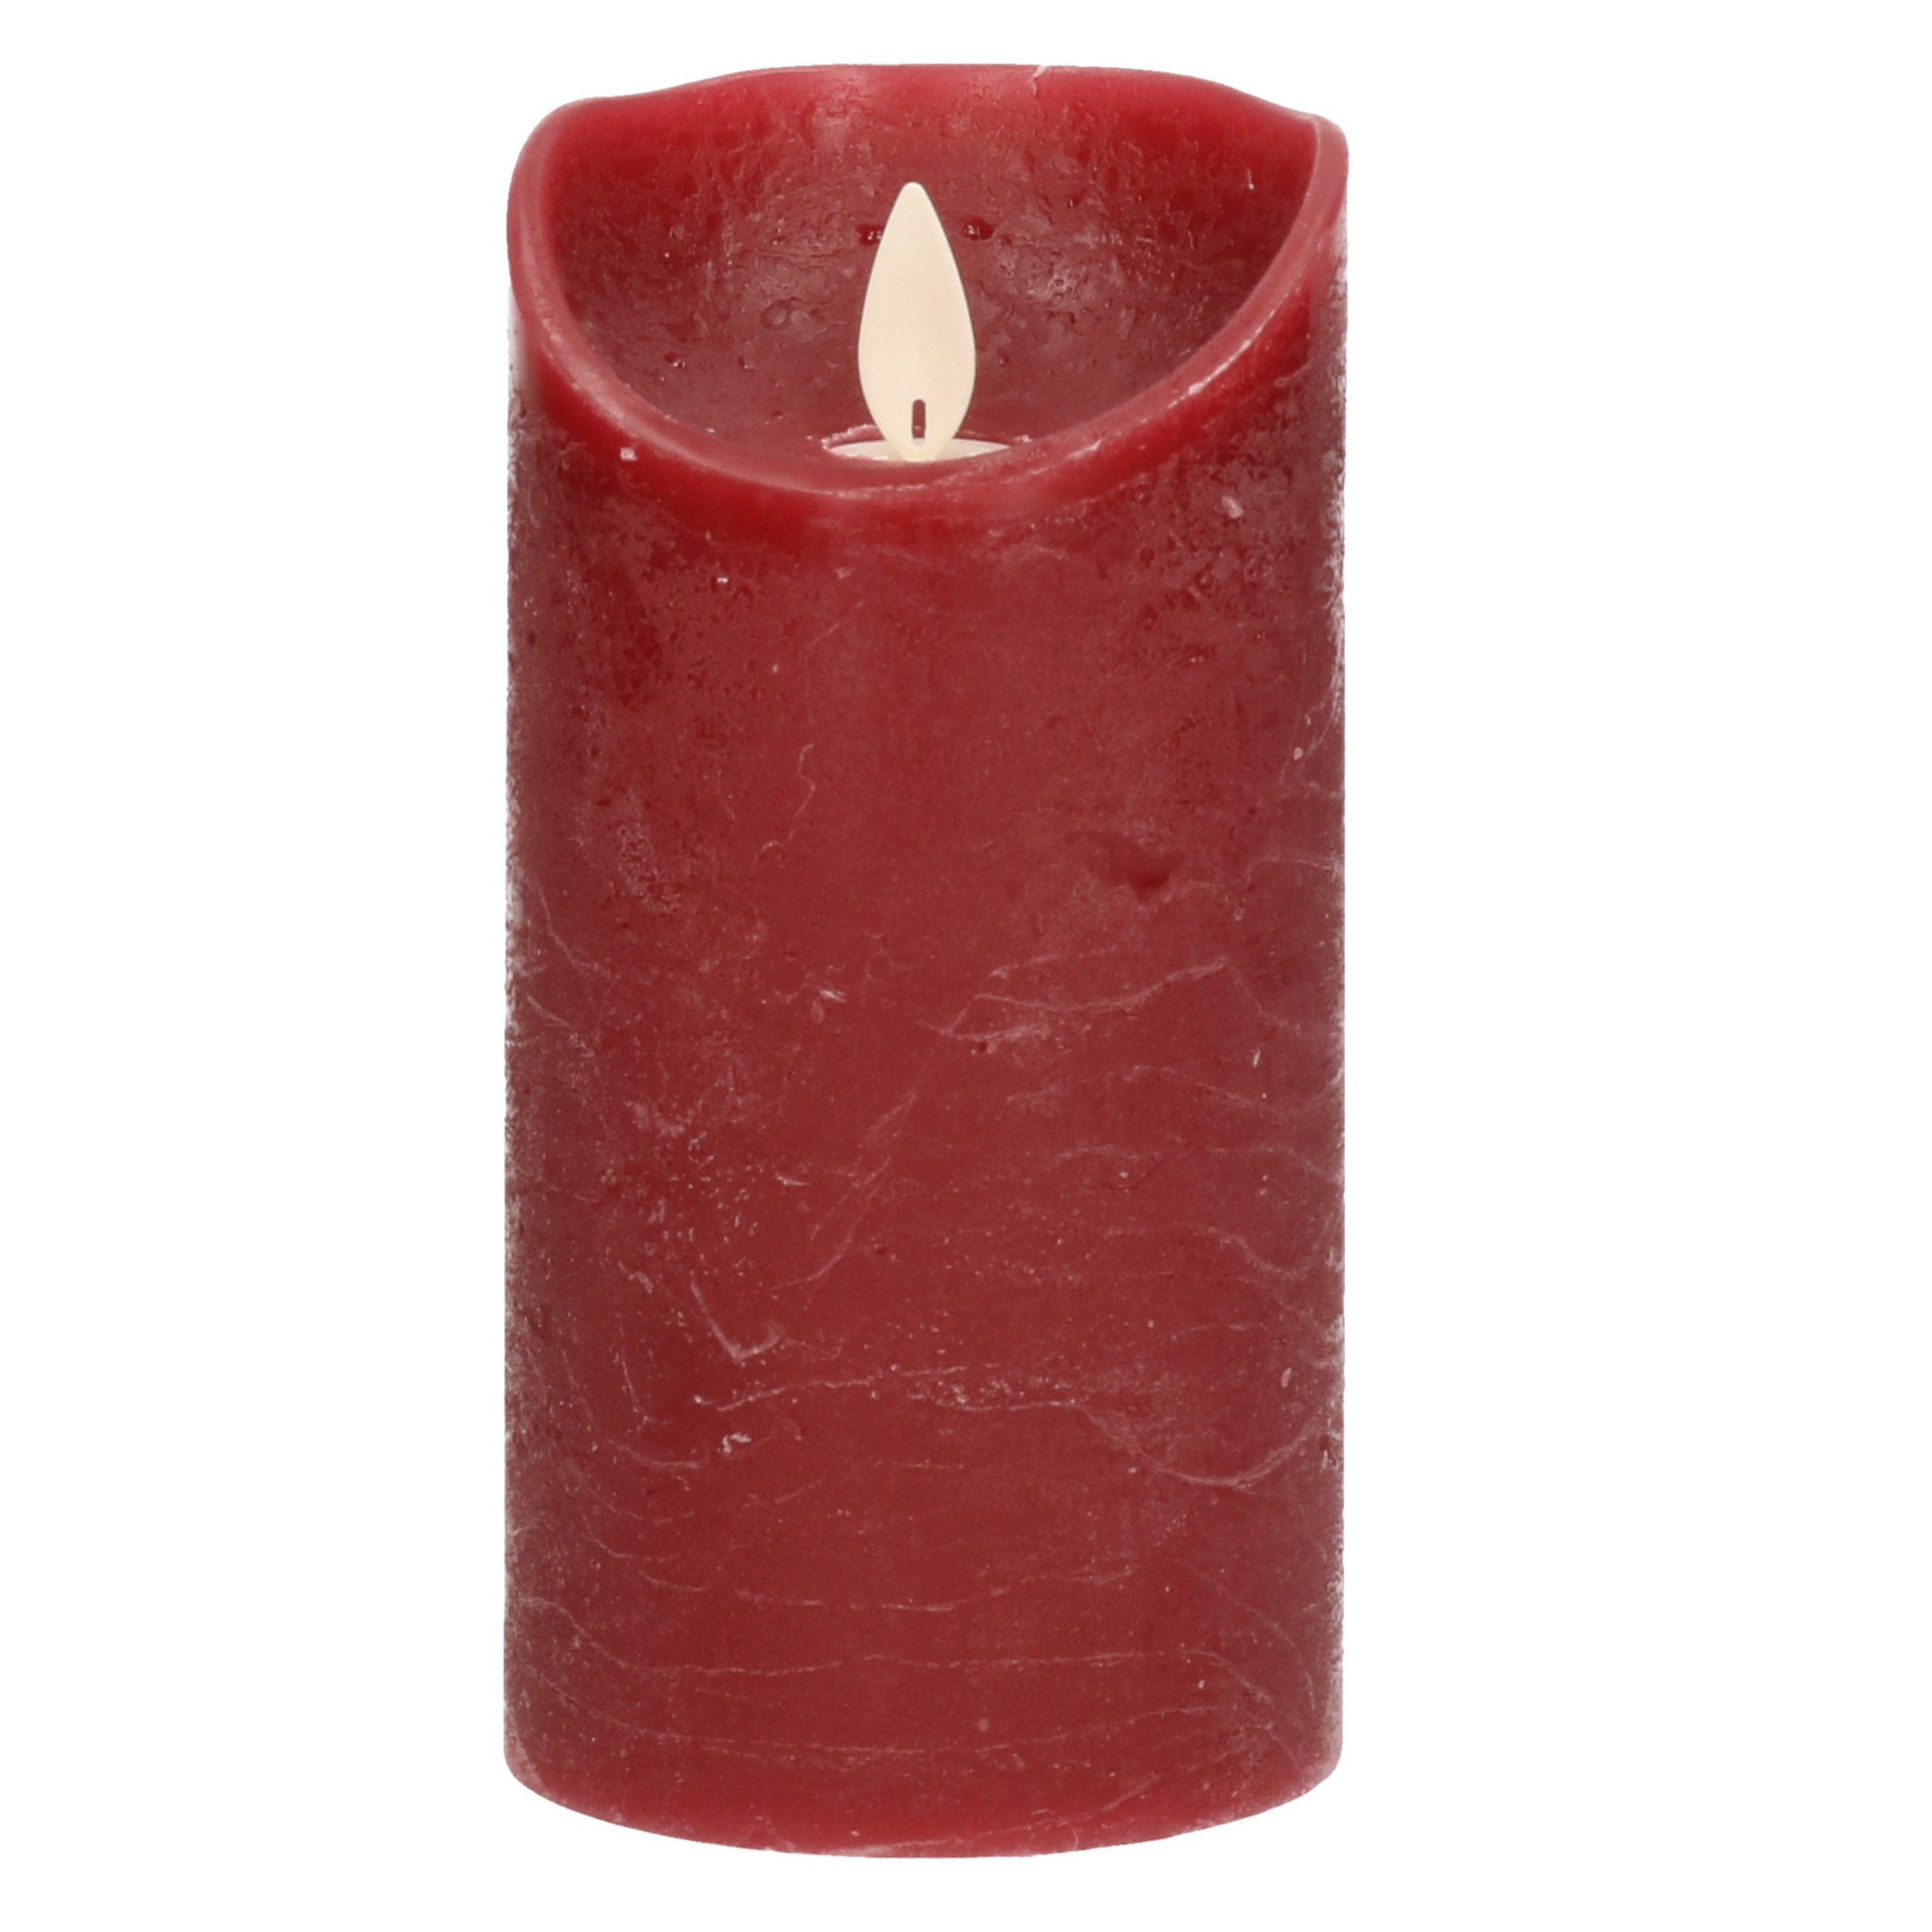 1x Bordeaux rode LED kaarsen-stompkaarsen met bewegende vlam 15 cm